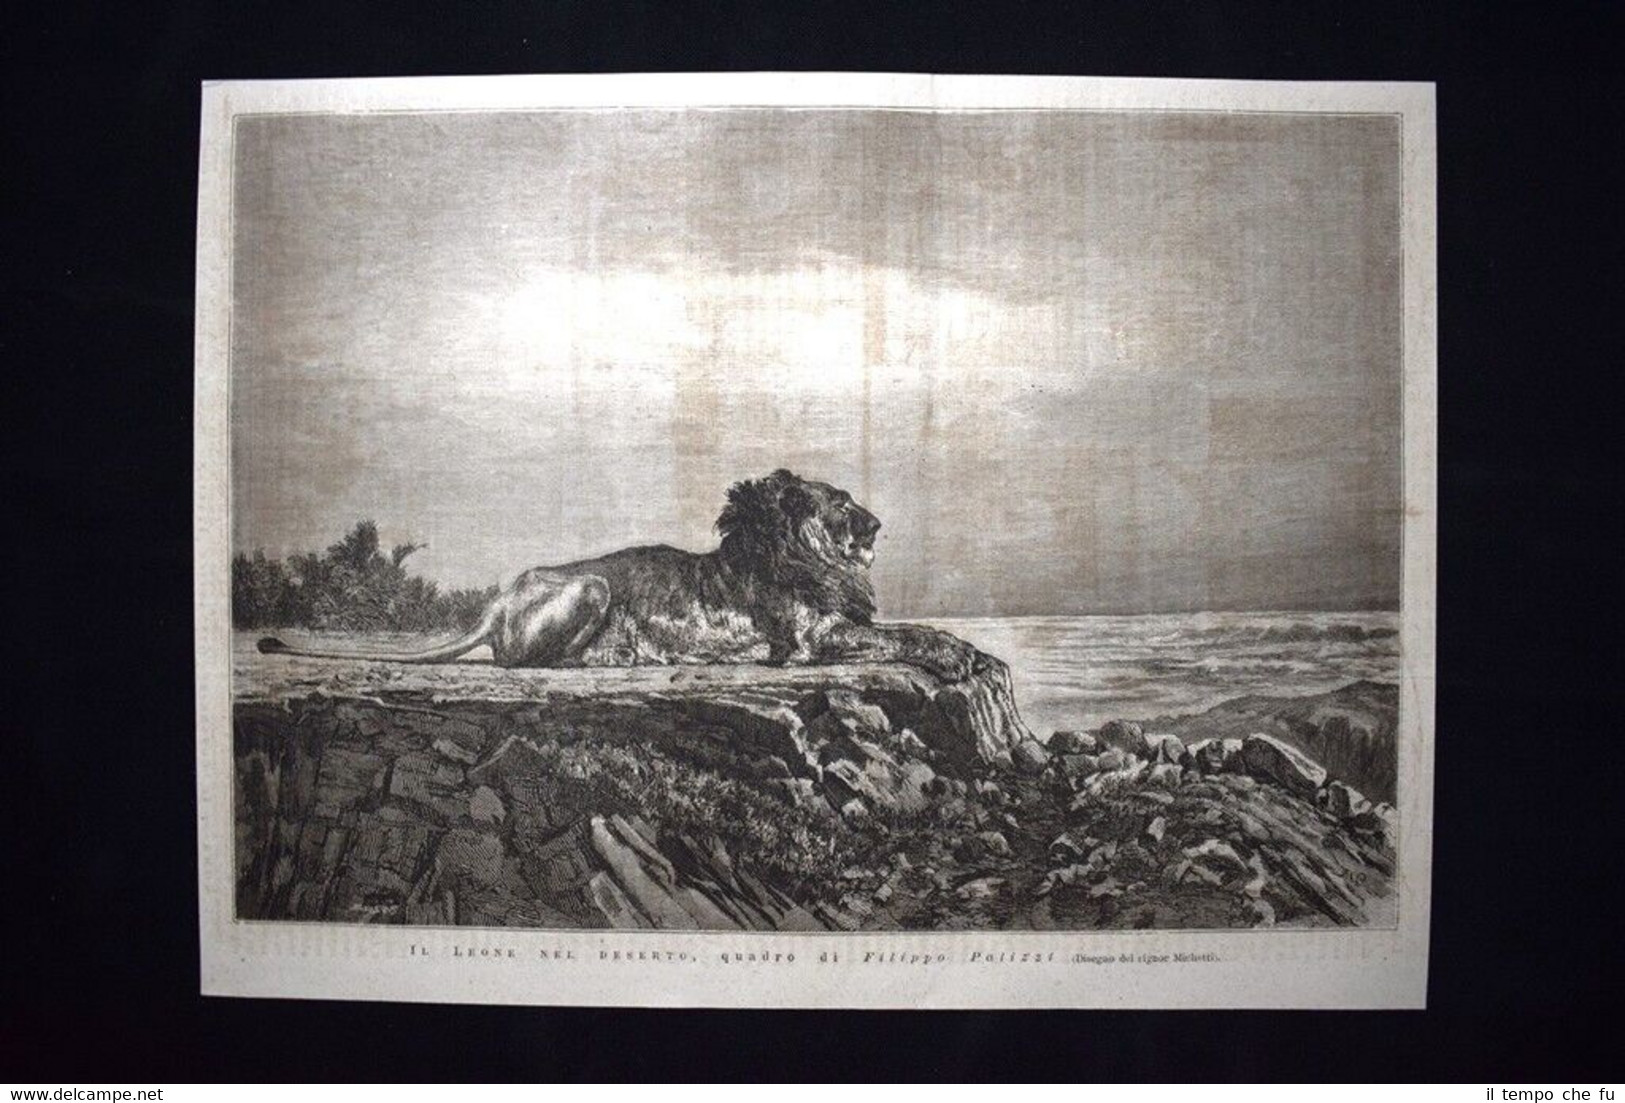 Il Leone nel deserto, quadro di Filippo Palizzi Incisione del …